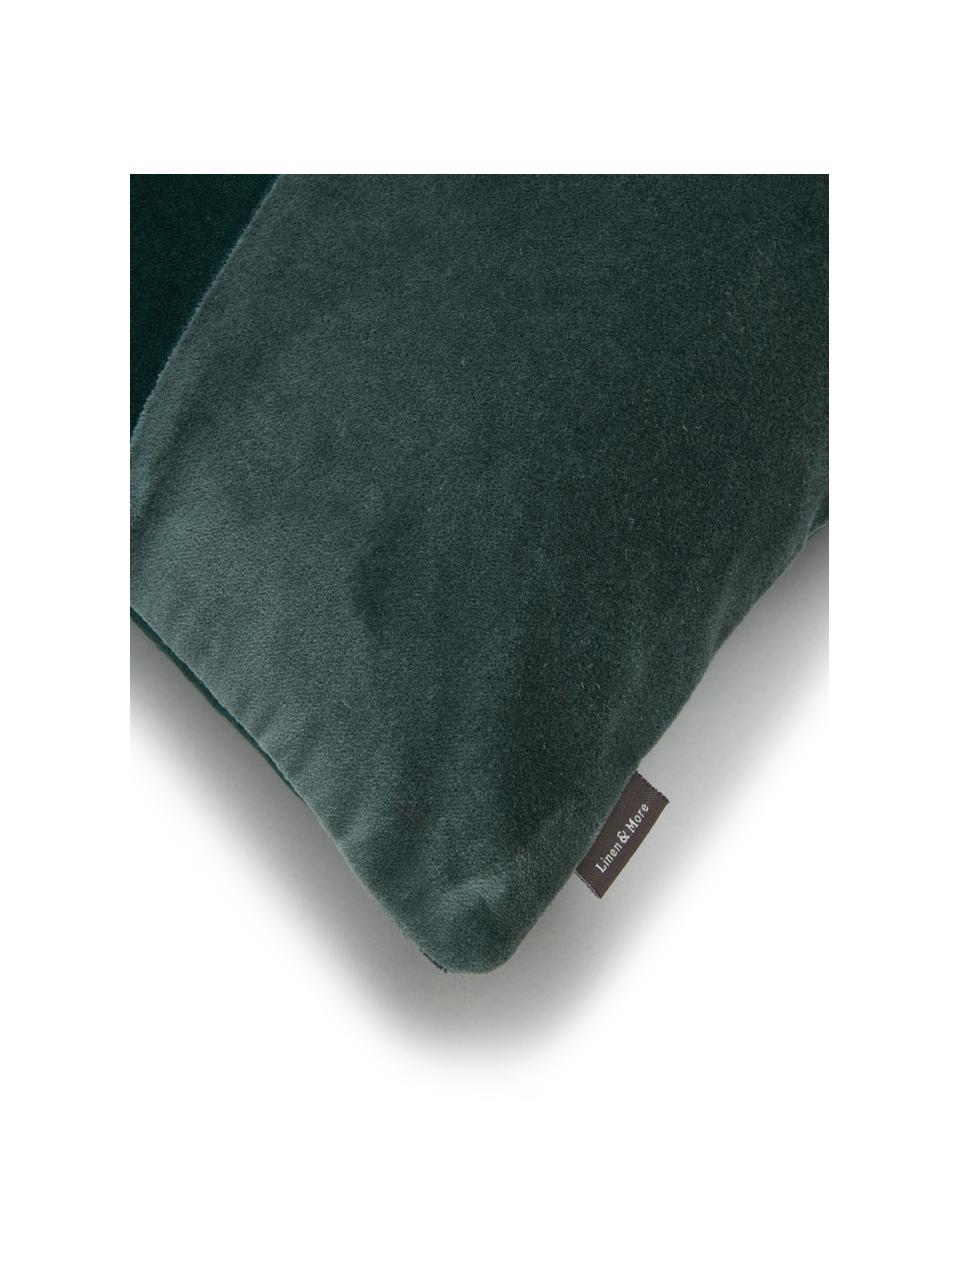 Cuscino in velluto tonalità verdi Patchwork, Rivestimento: 100% velluto di cotone, Tonalità verdi, Larg. 30 x Lung. 50 cm